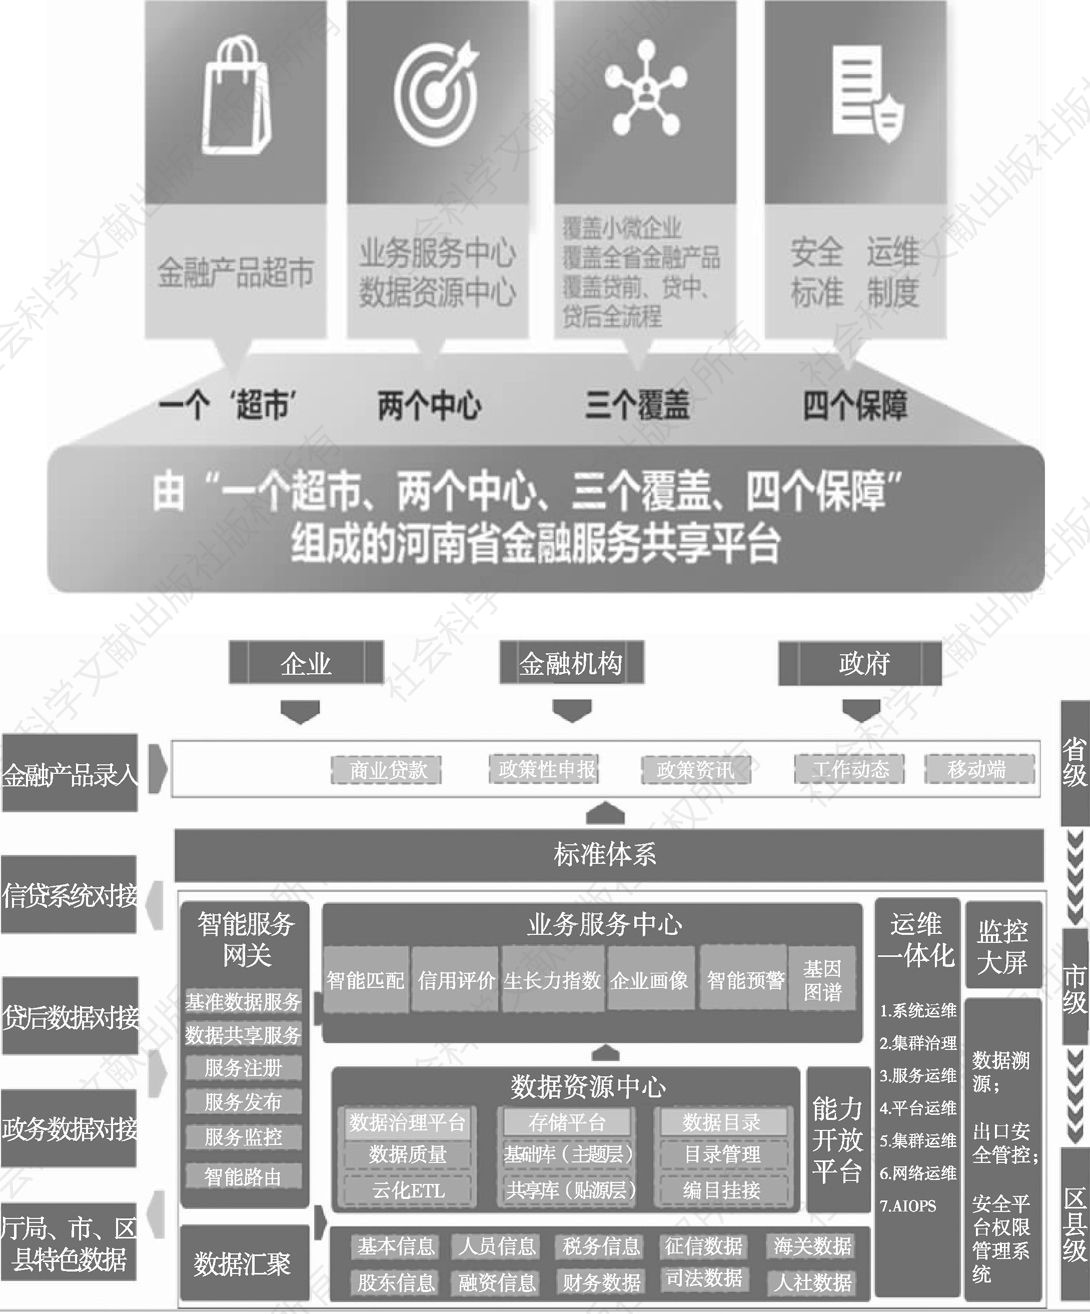 图6 河南省金融服务共享平台构成